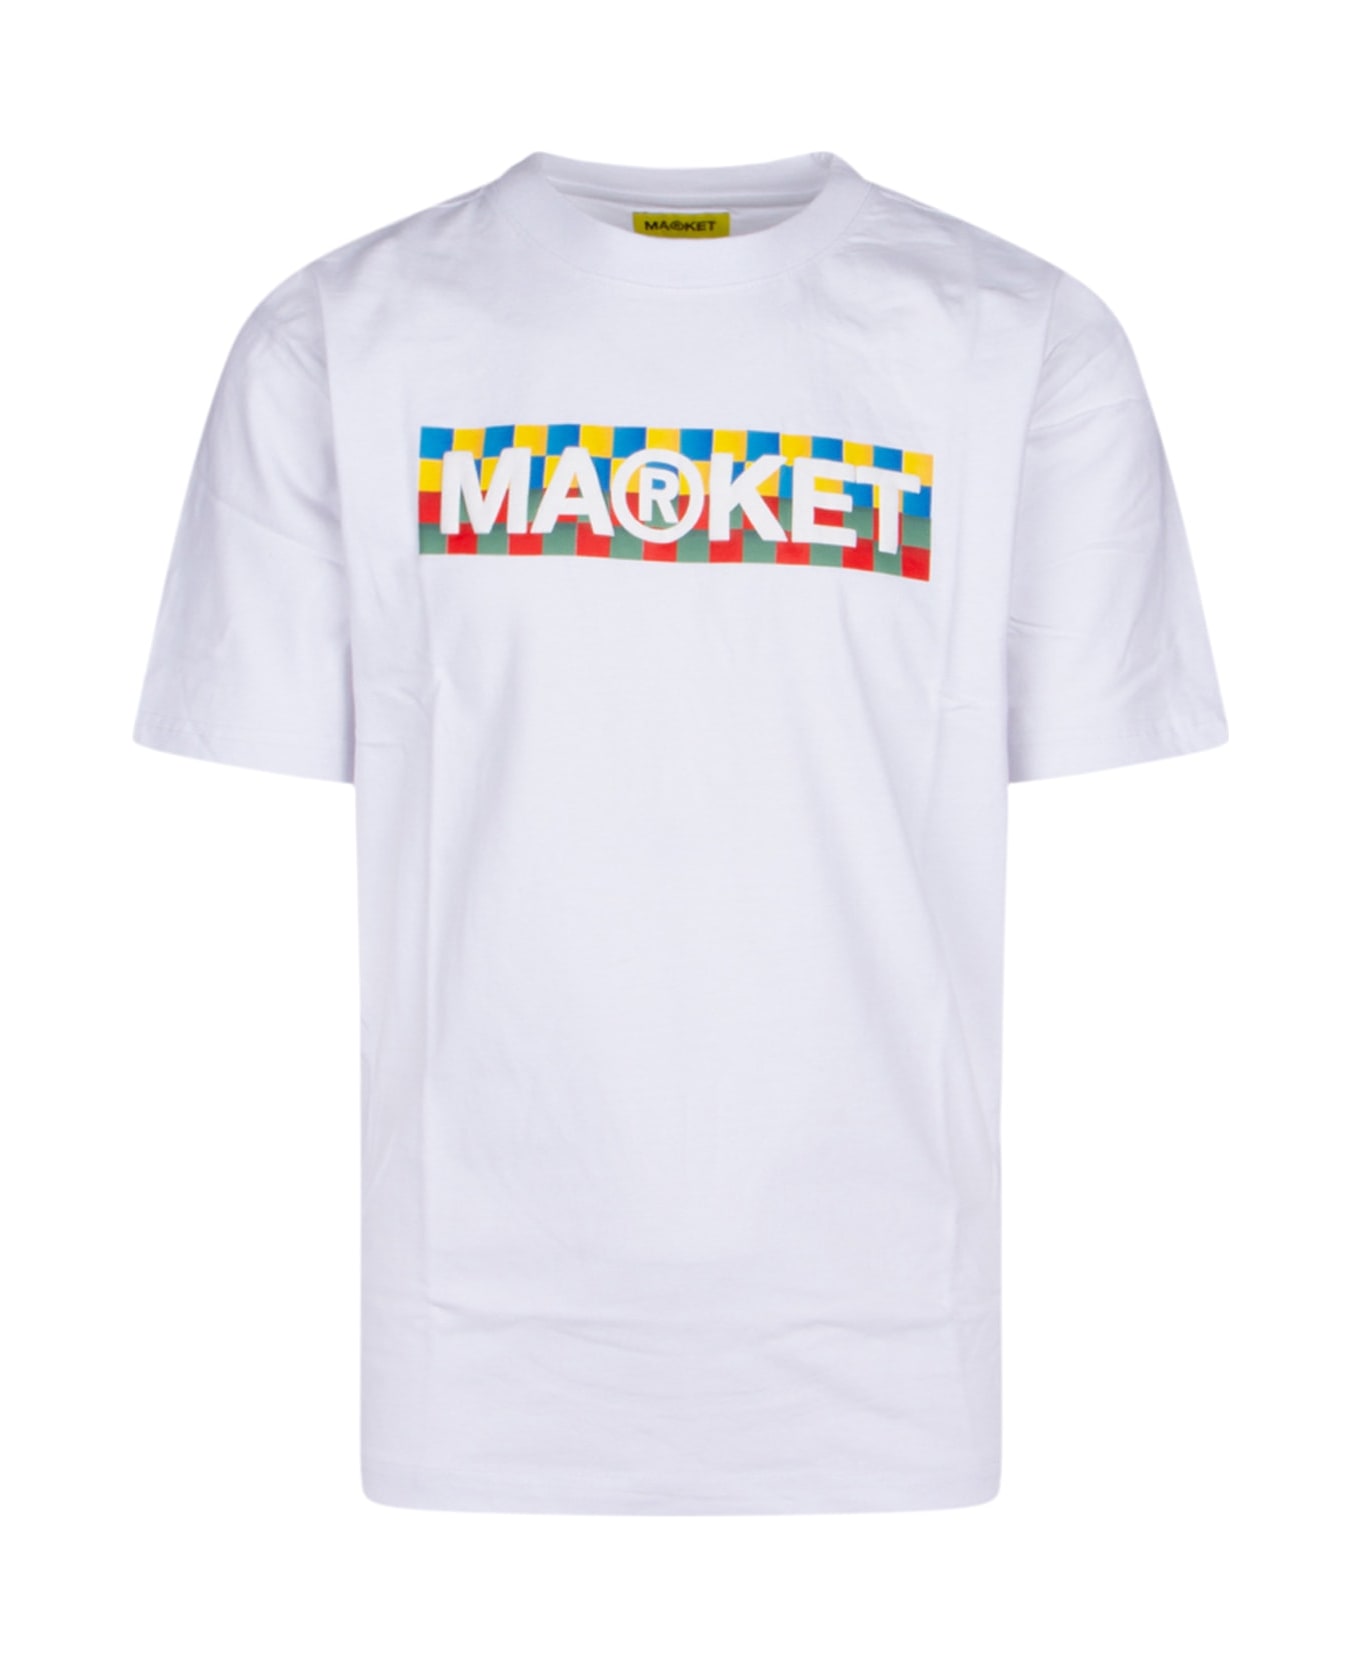 Market T-shirt - WHITE